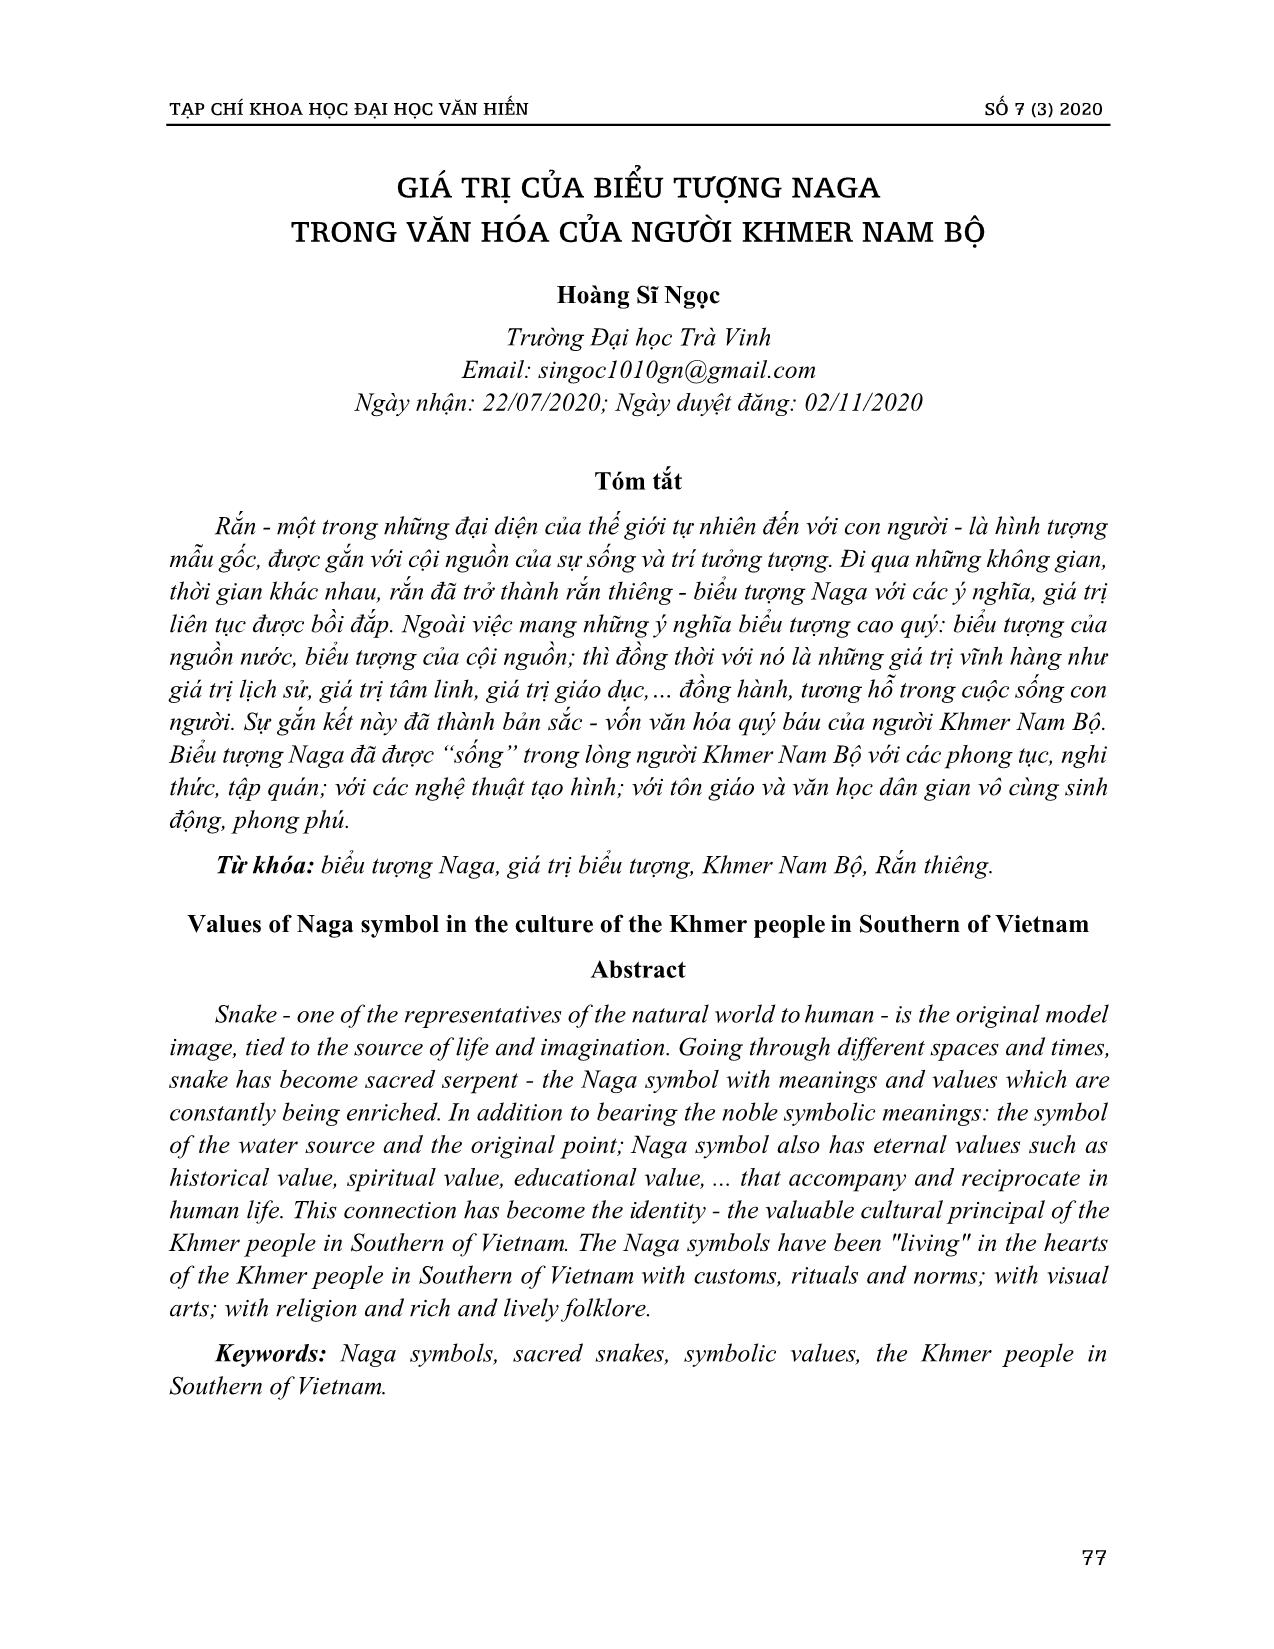 Giá trị của biểu tượng Naga trong văn hóa của người Khmer Nam Bộ trang 1